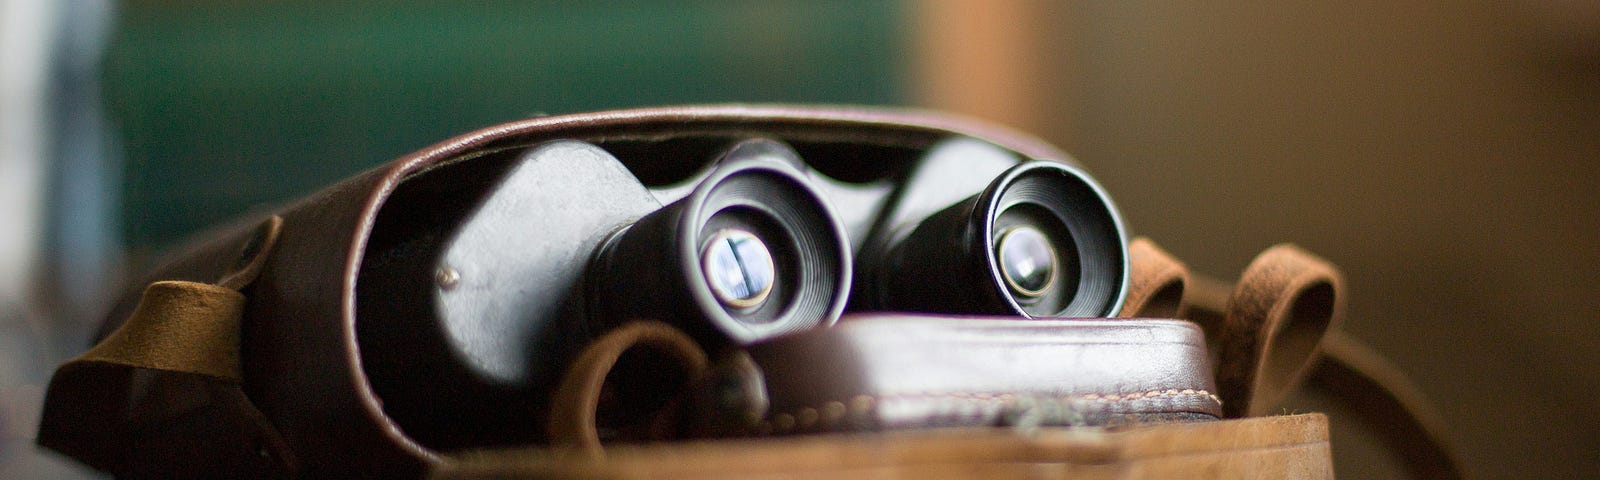 binoculars on a desk inside a case